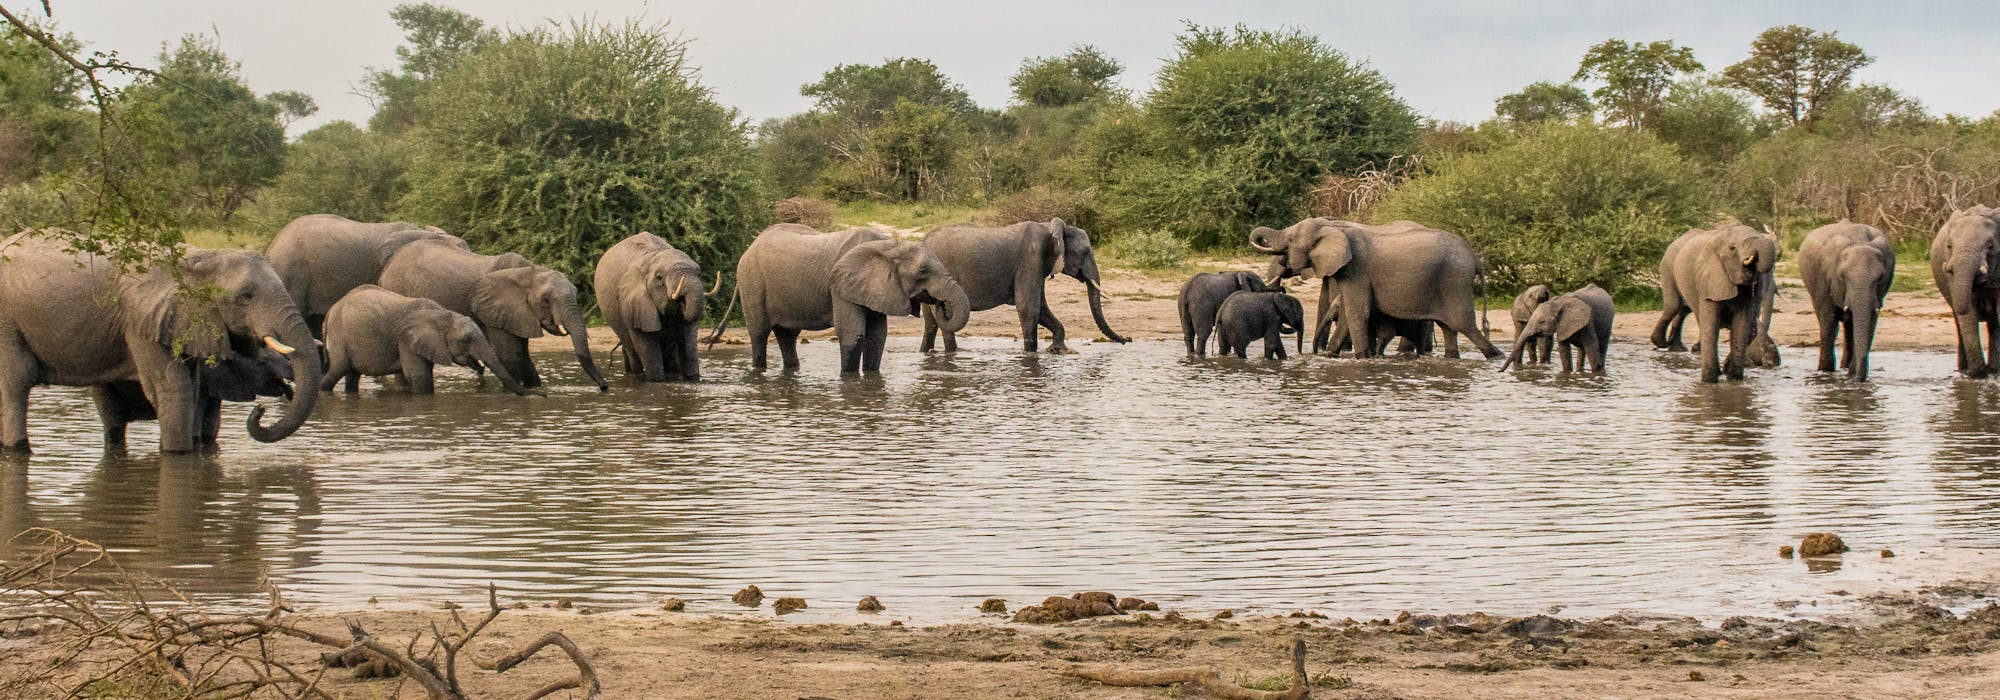 Herd of elephants in the water in the Okavango